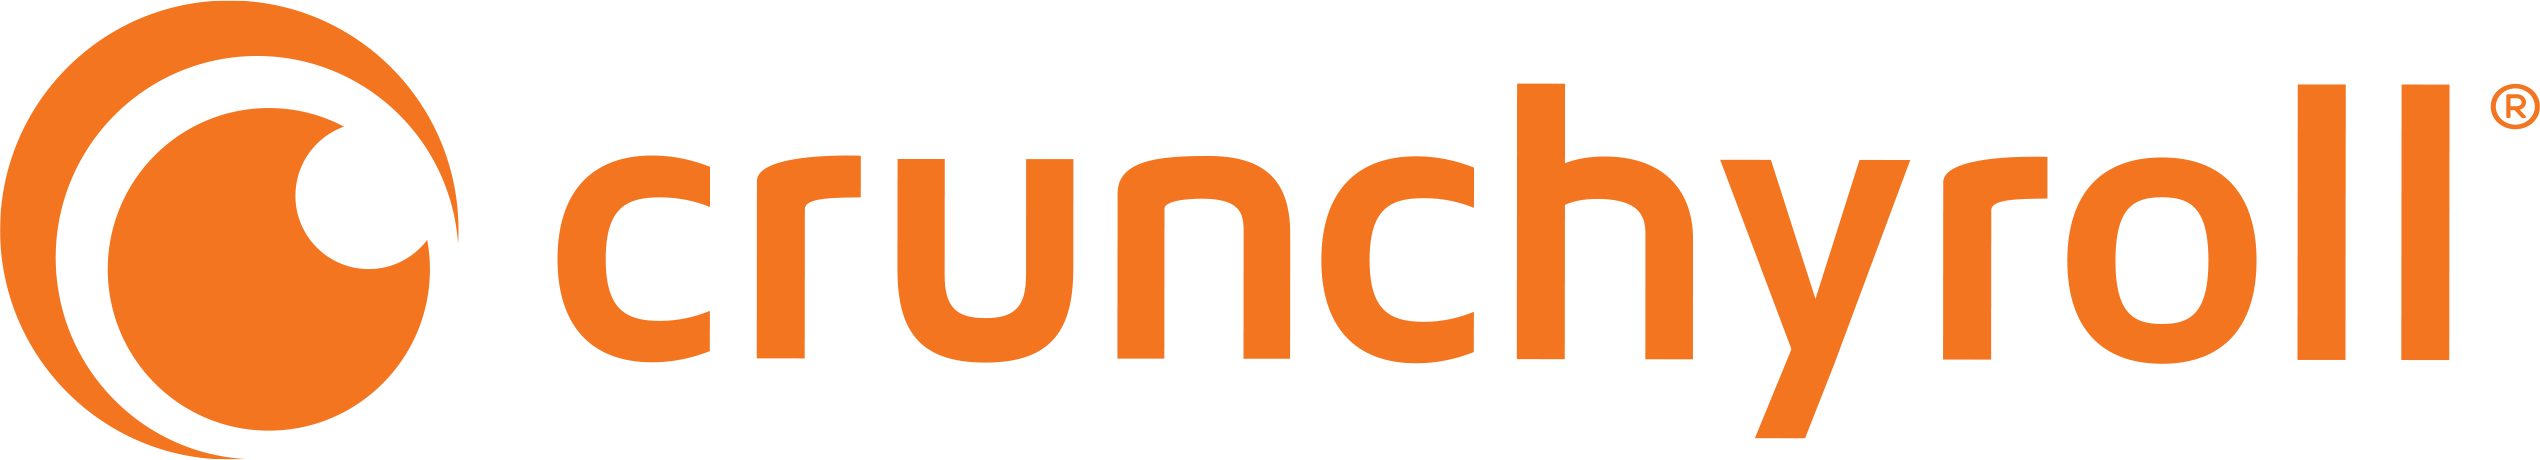 Crunchyroll GmbH